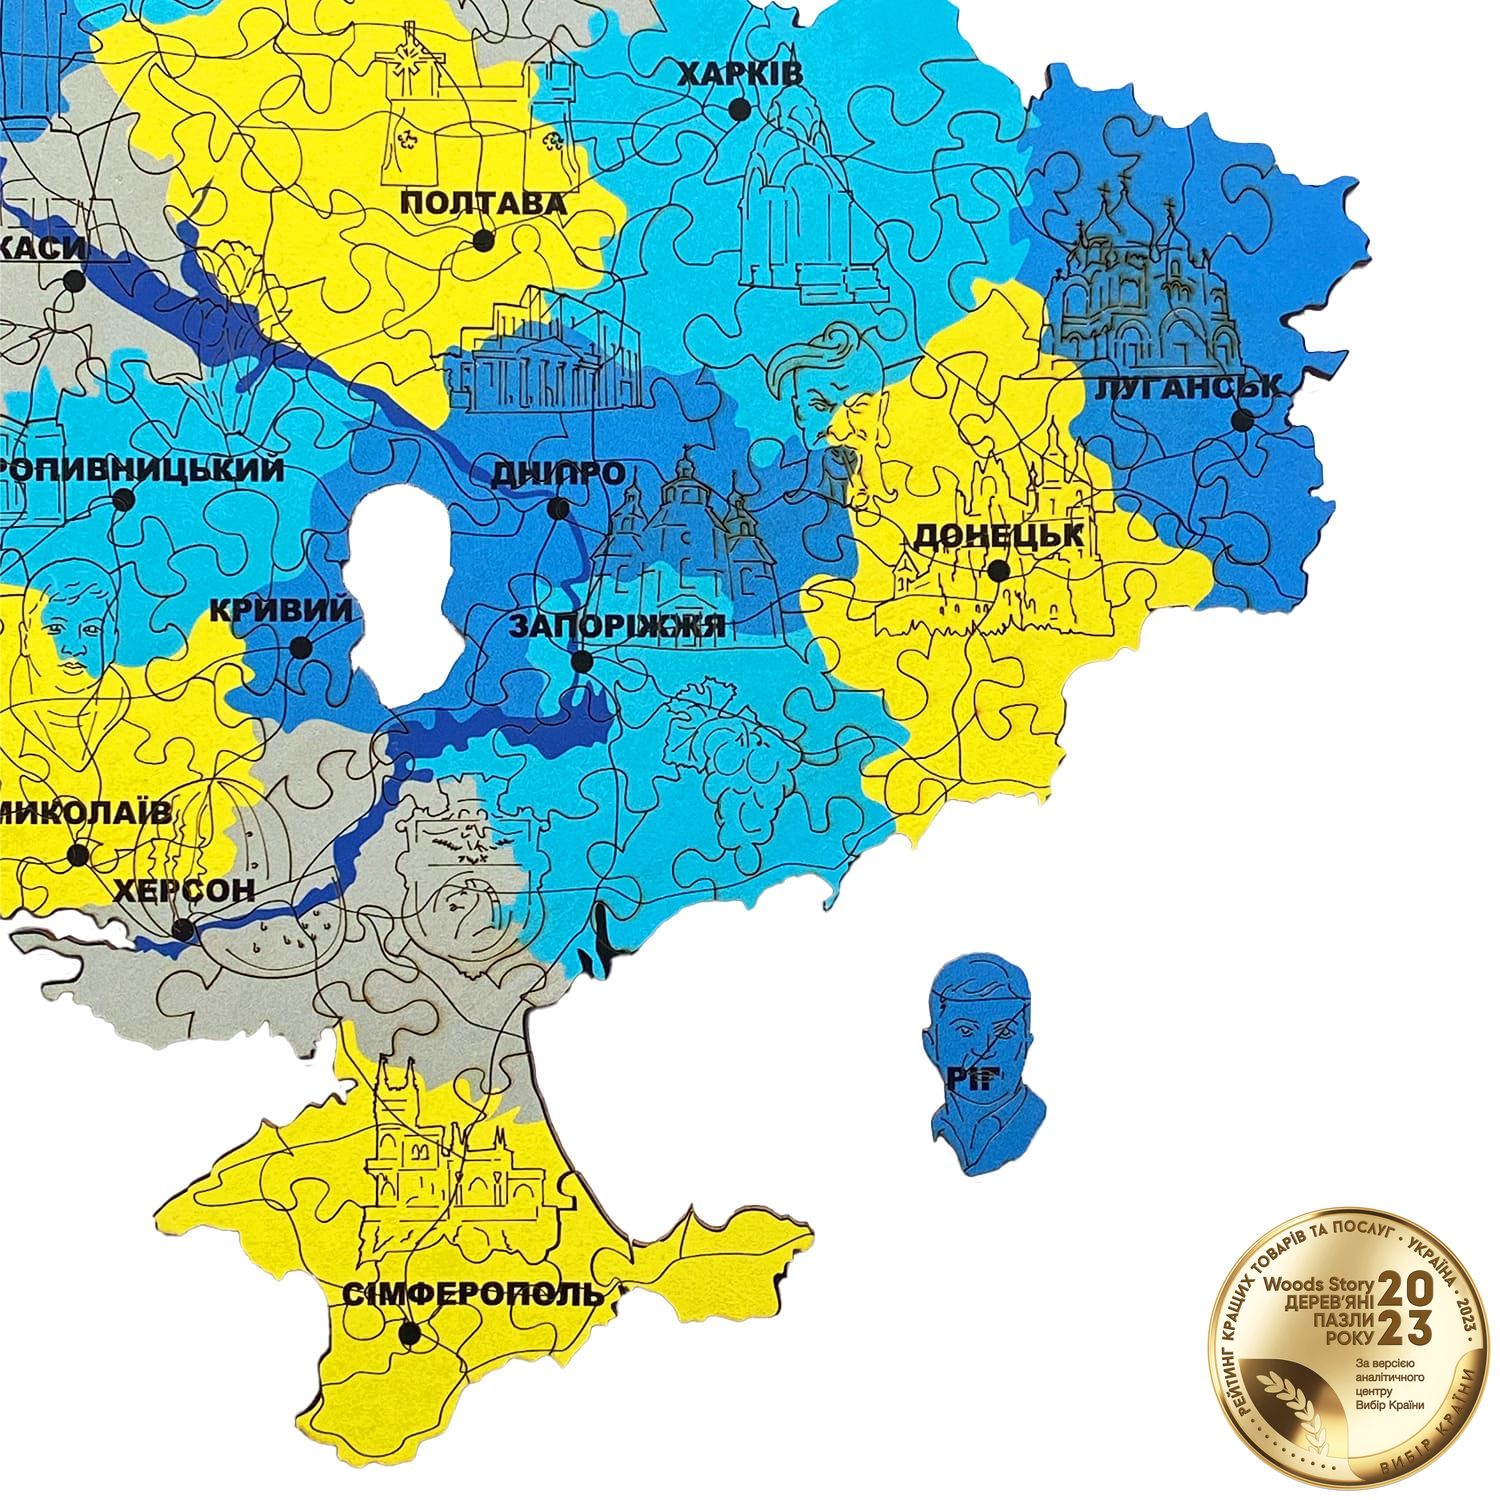 Патріотичний дерев'яний пазл Карта України жовто-блакитна L